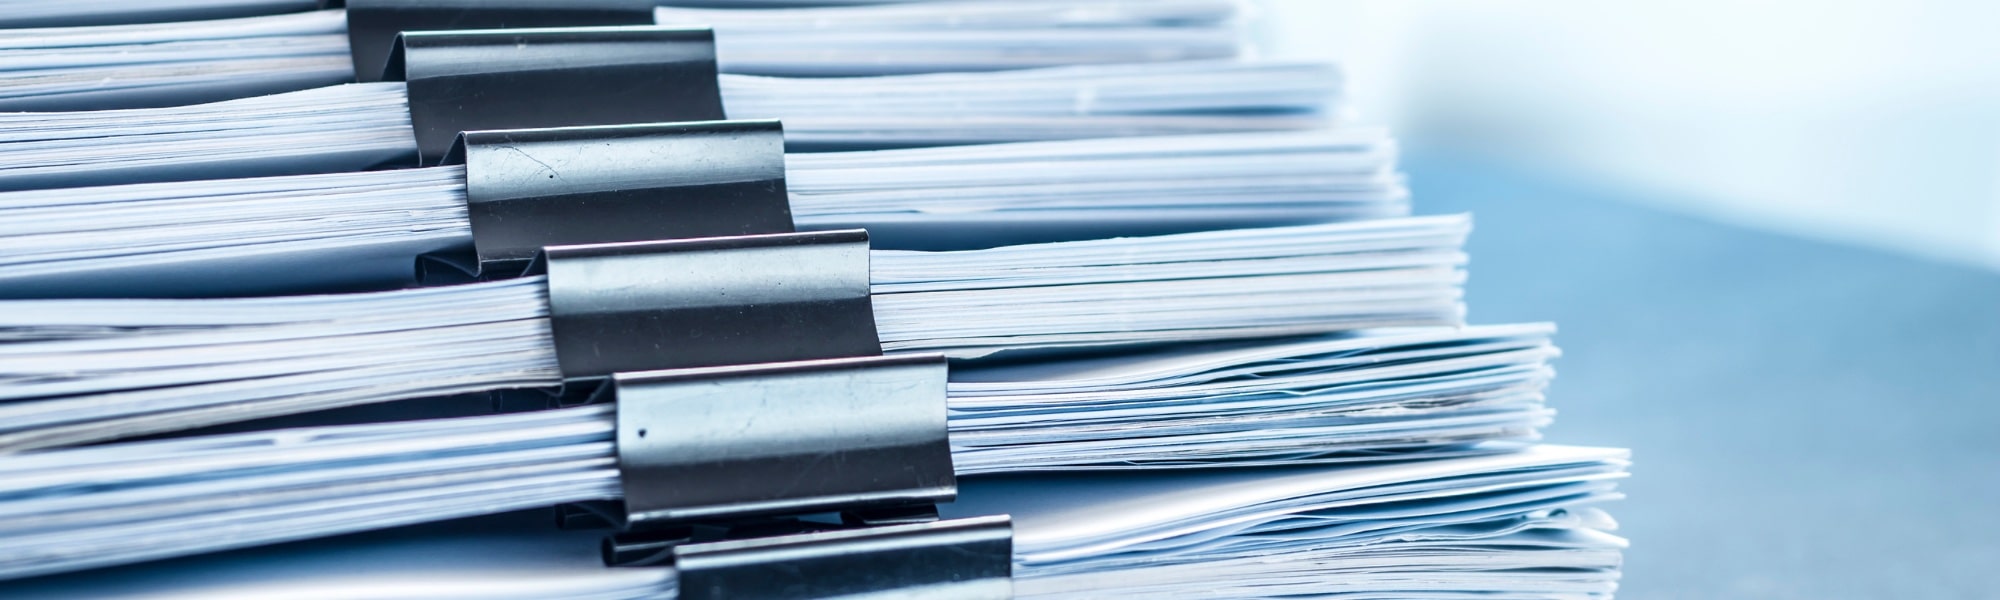 stack of ivdr regulation papers